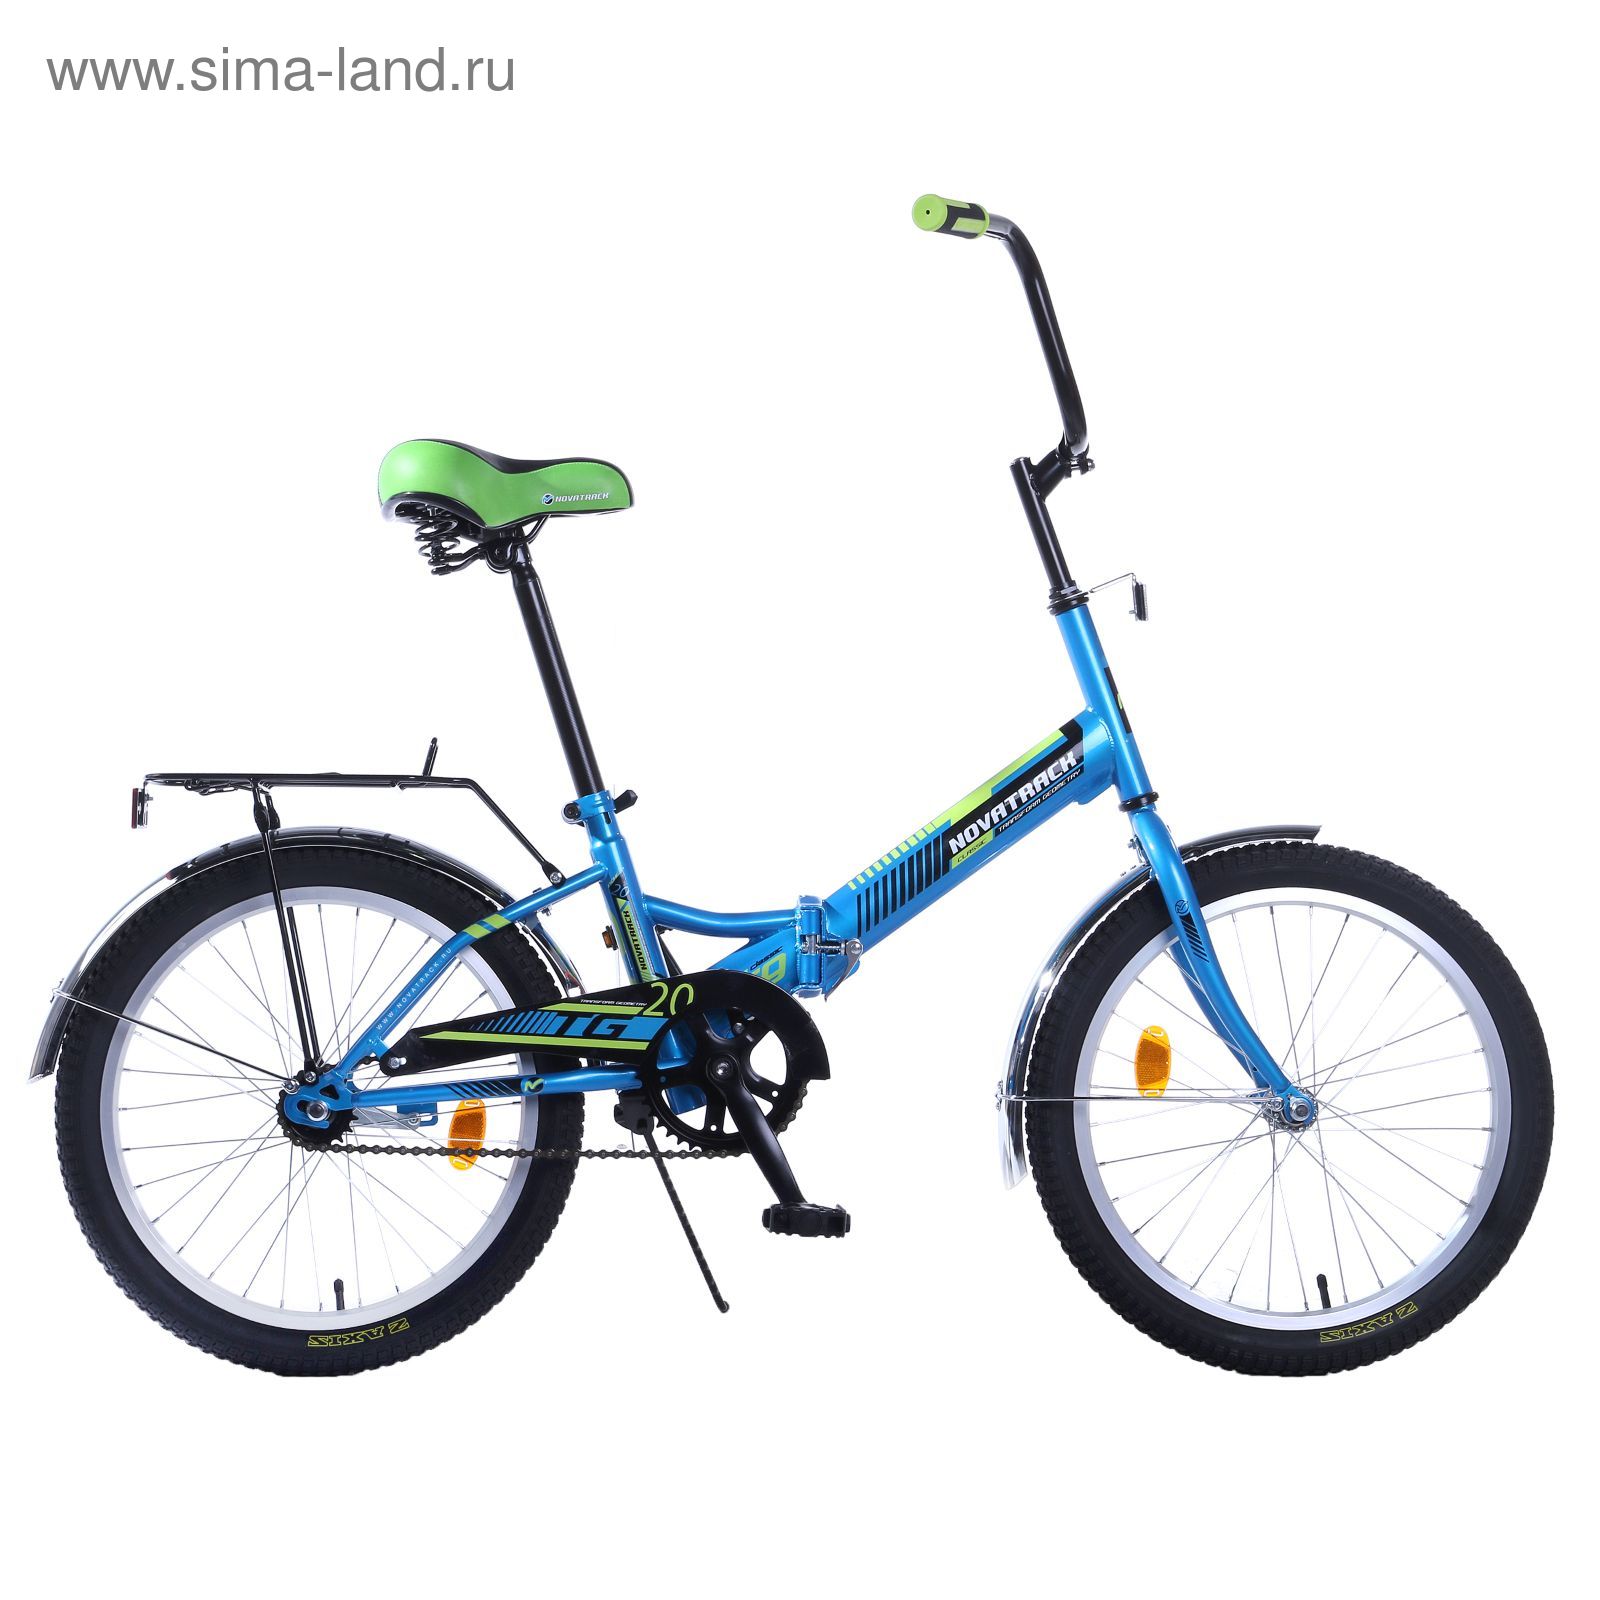 Велосипед 20" Novatrack TG20, 2017, 1ск., цвет синий